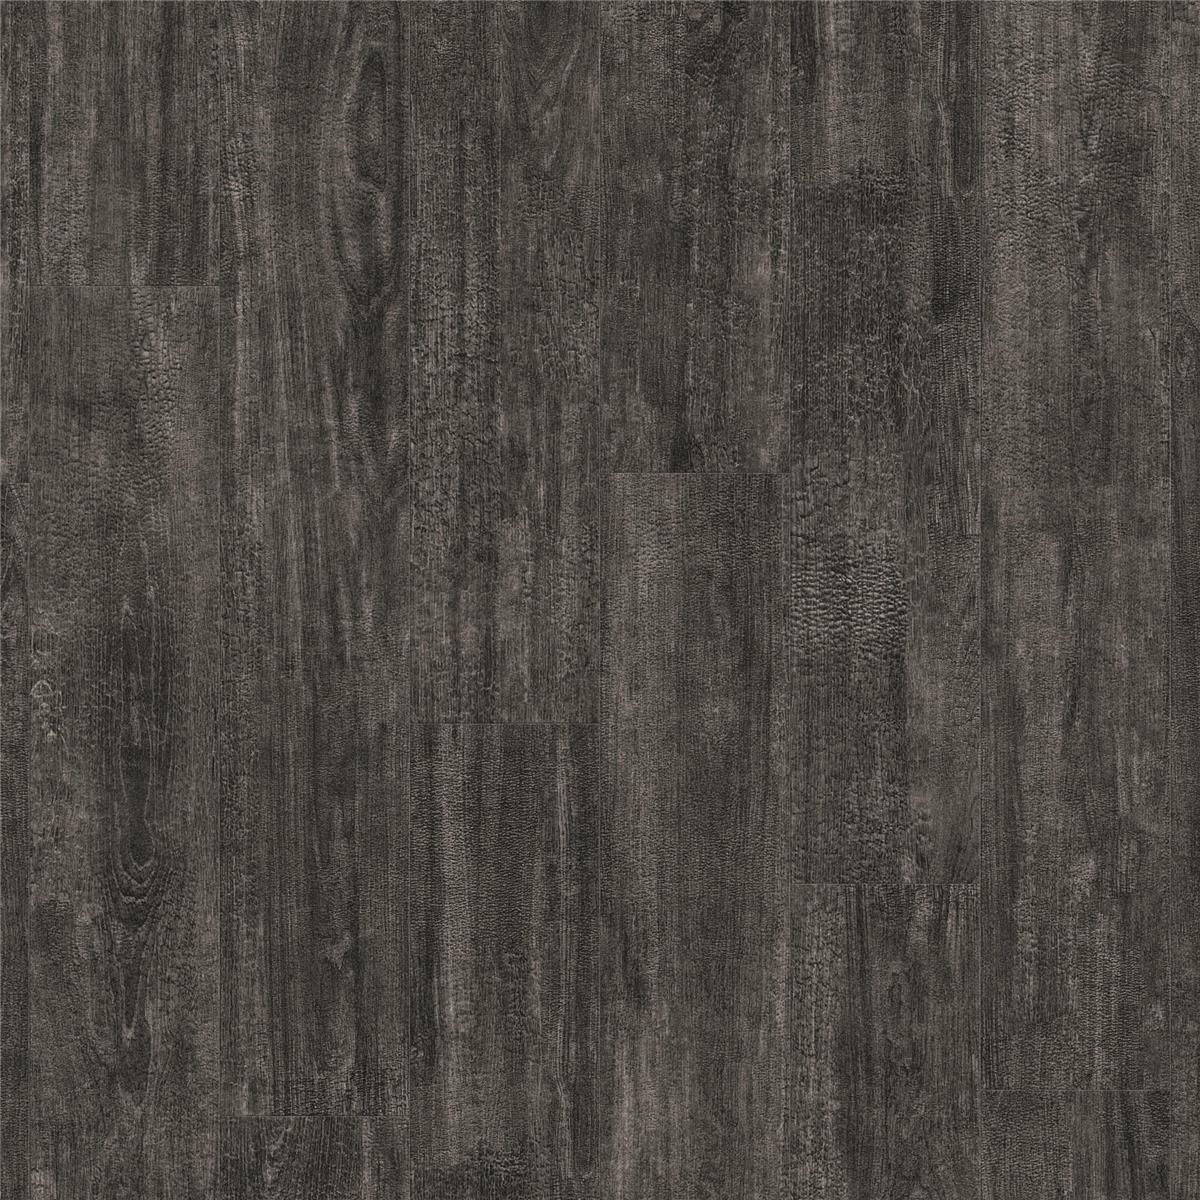 Designboden NATURALS-Charred Wood-Black Planke 120 cm x 20 cm - Nutzschichtdicke 0,55 mm